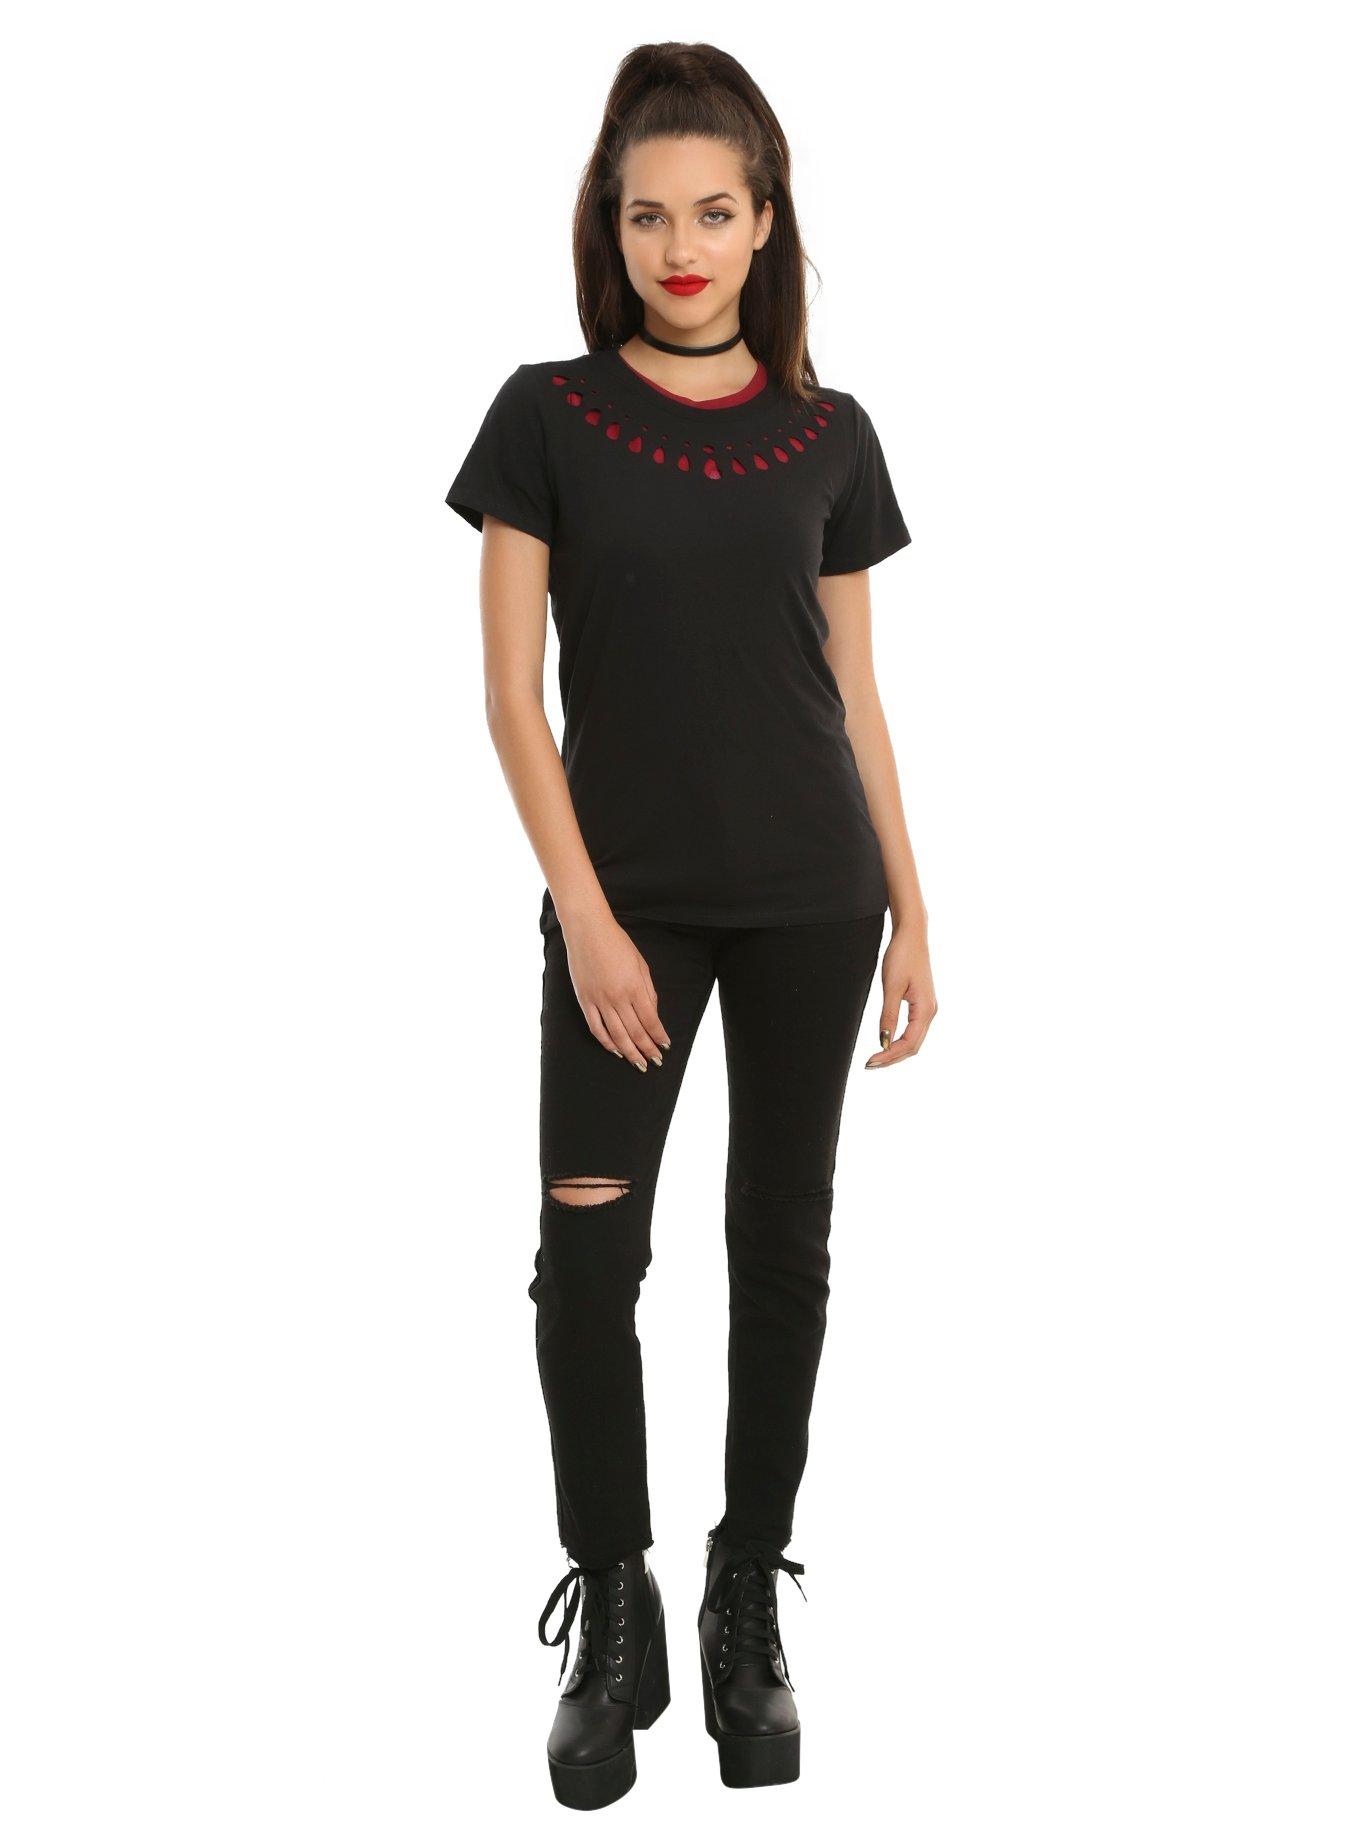 Black & Red Skull Cut-Out Back Girls T-Shirt, , alternate